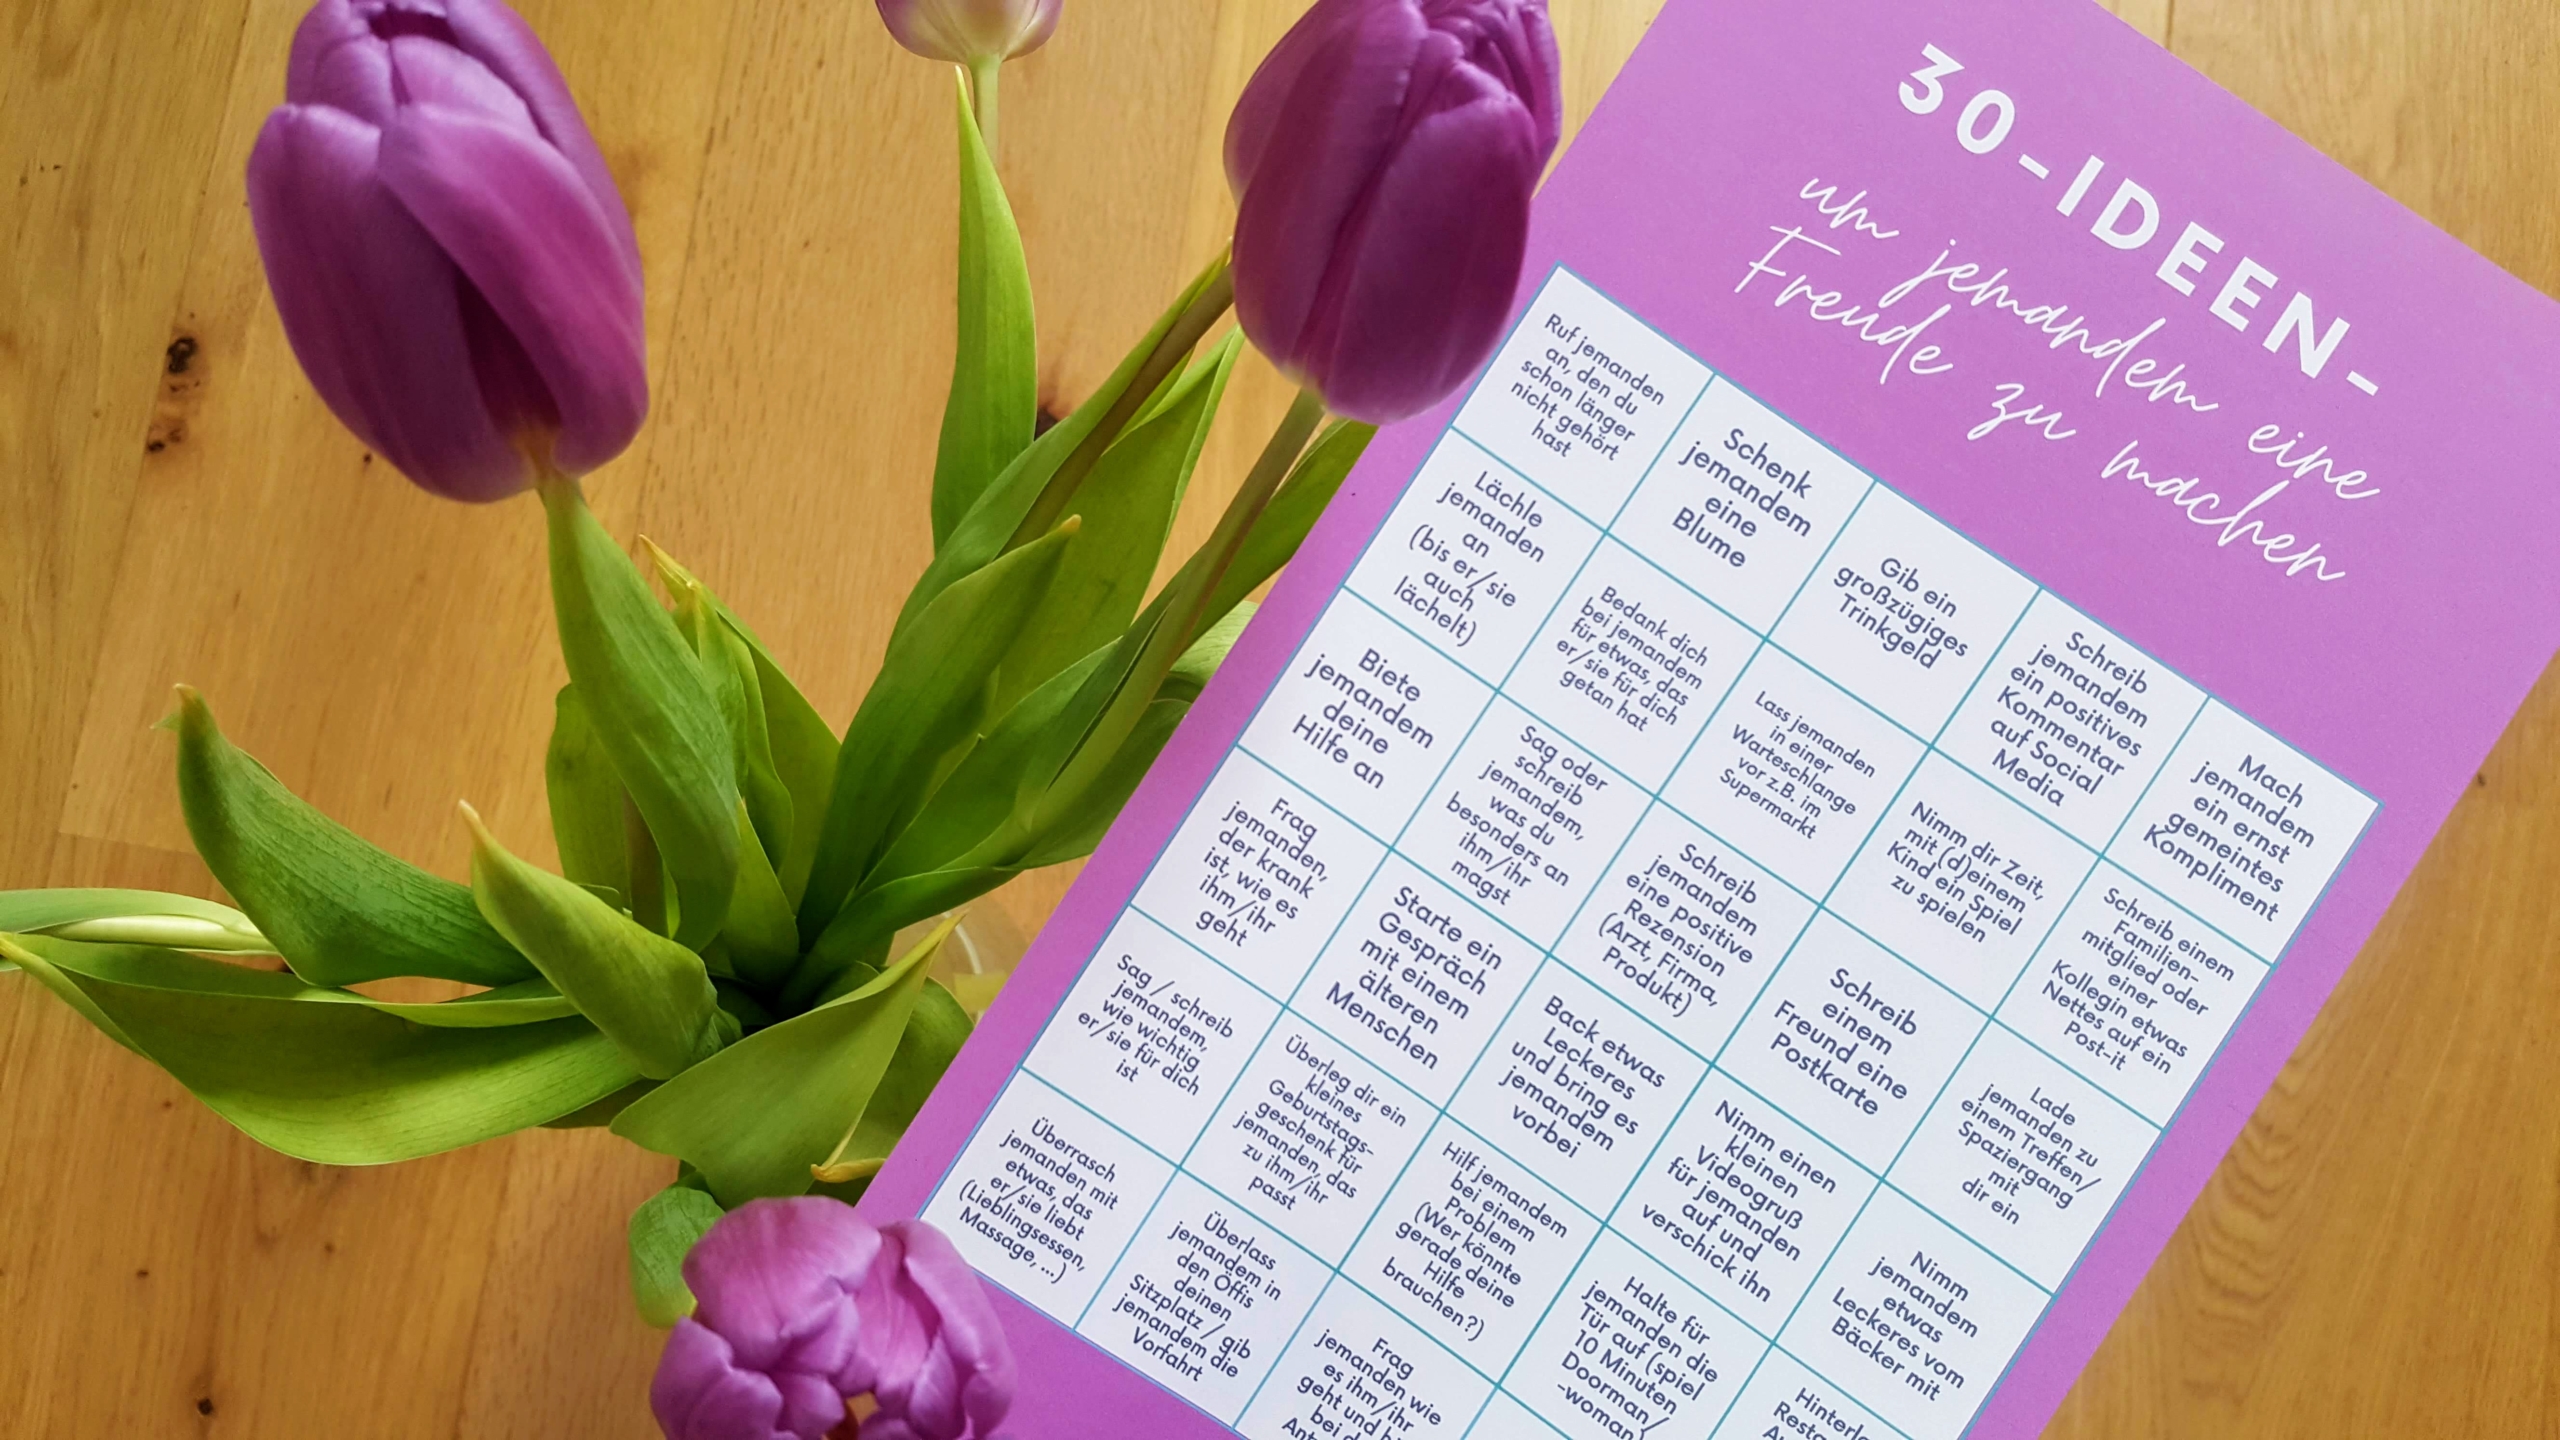 Tulpen mit Plakat mit 30 Ideen um jemandem eine Freude zu machen